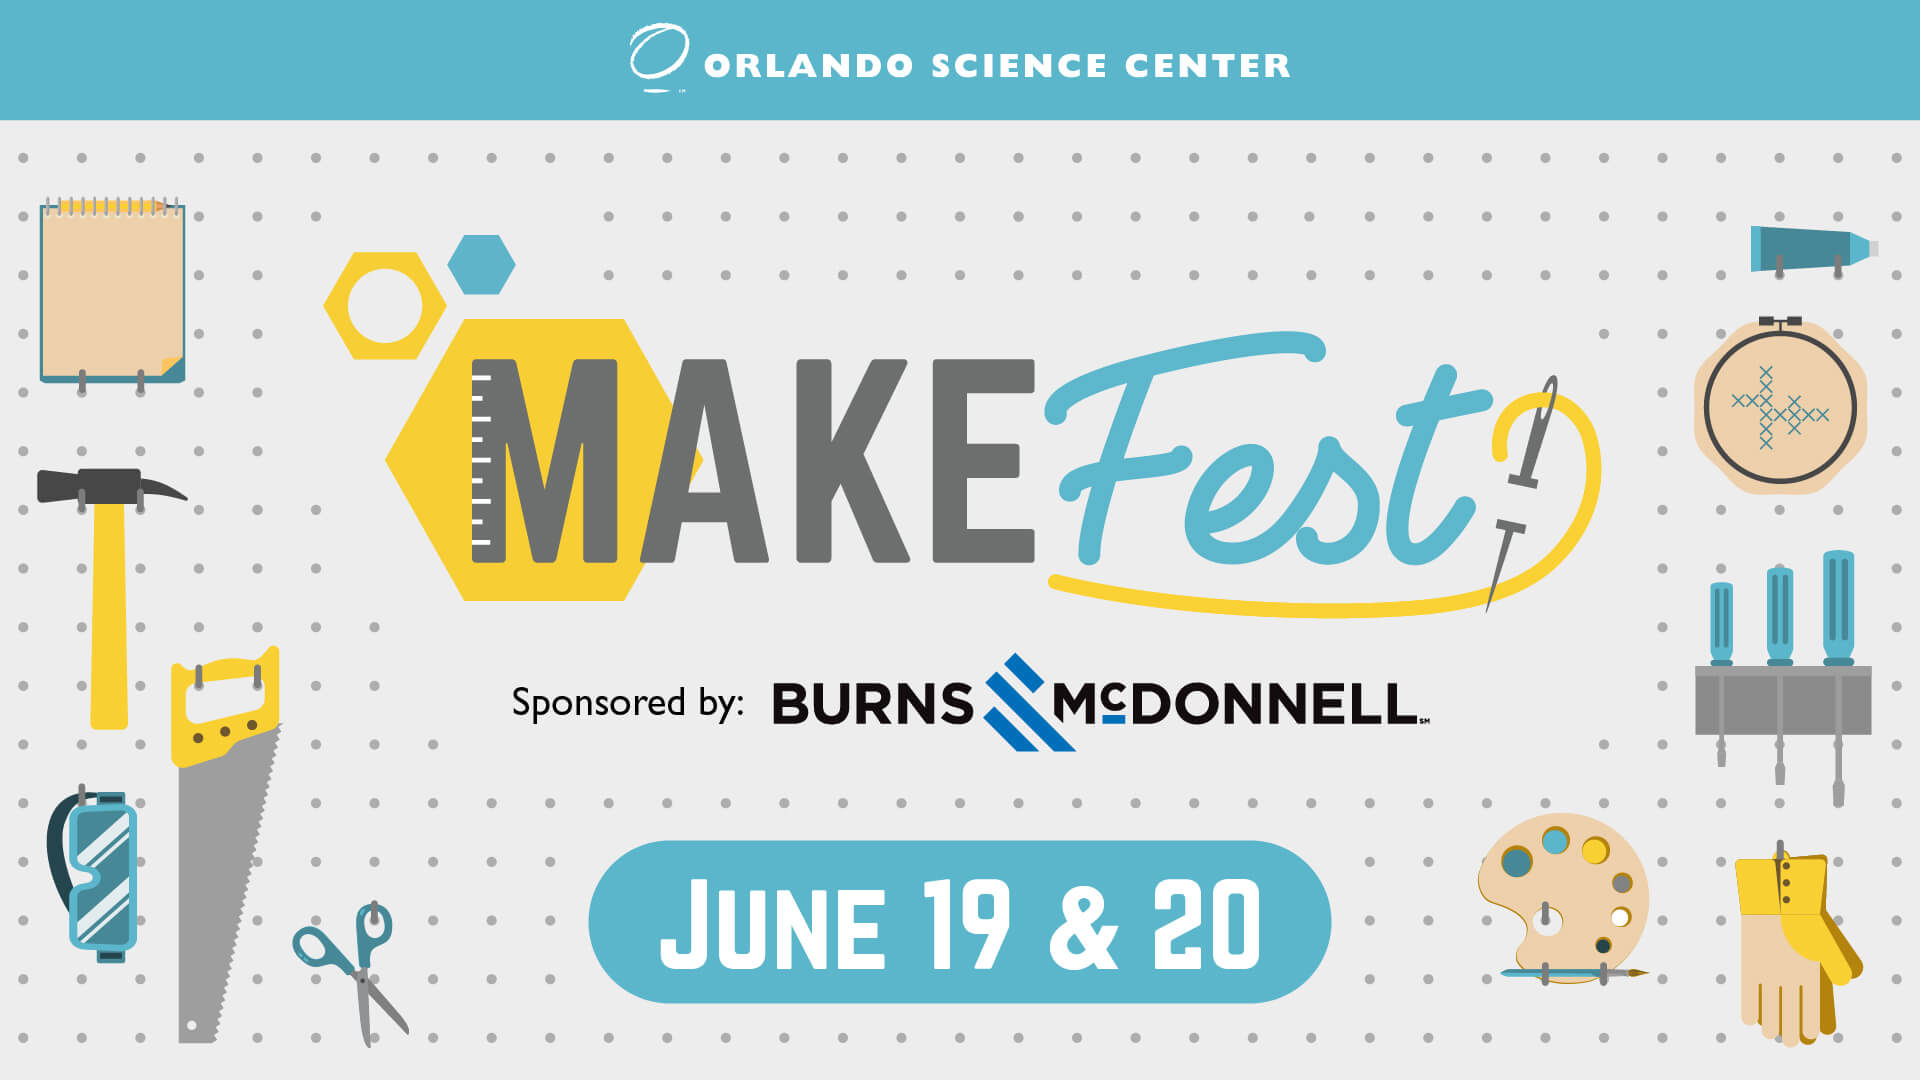 Make Fest Sponsored by Burns & McDonnell June 19 & 20